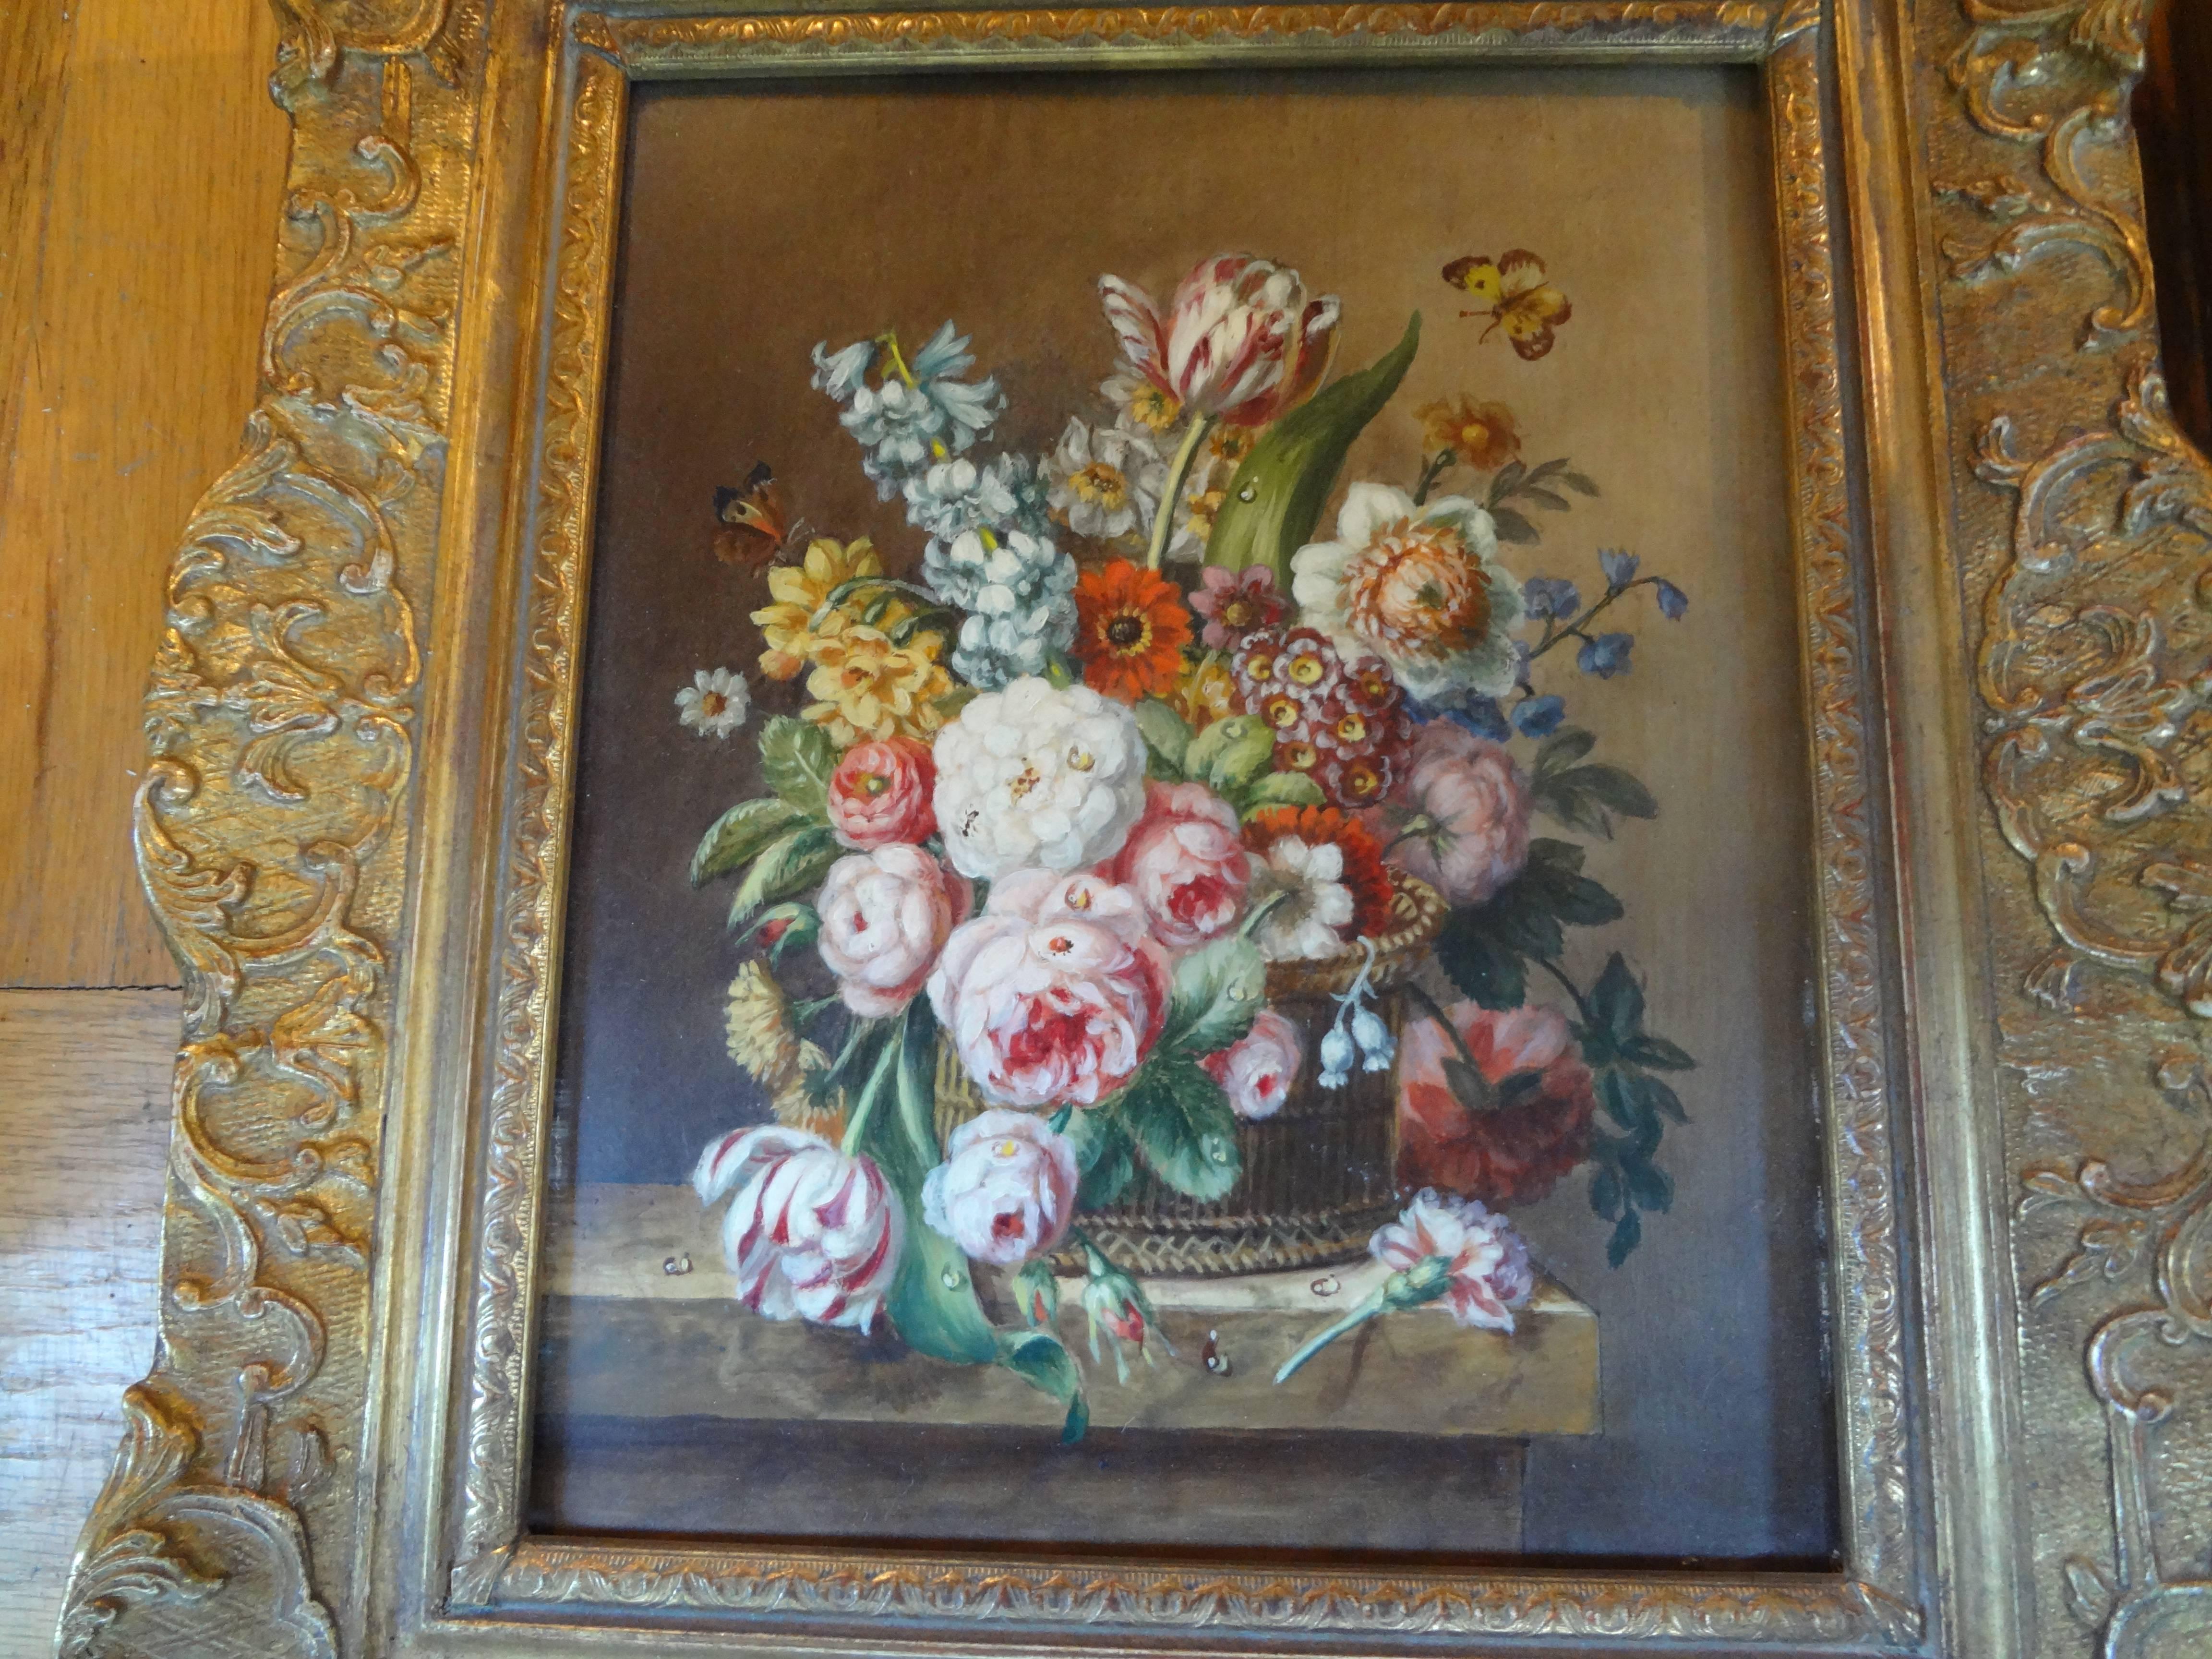 Paar antike französische gerahmte Blumen-Ölgemälde.
Gut ausgeführtes Paar antiker französischer Blumen-Ölgemälde auf Holz in vergoldeten Rahmen, um 1920 oder früher. Diese schönen dekorativen antiken Ölgemälde im Stil des 18. Jahrhunderts befinden